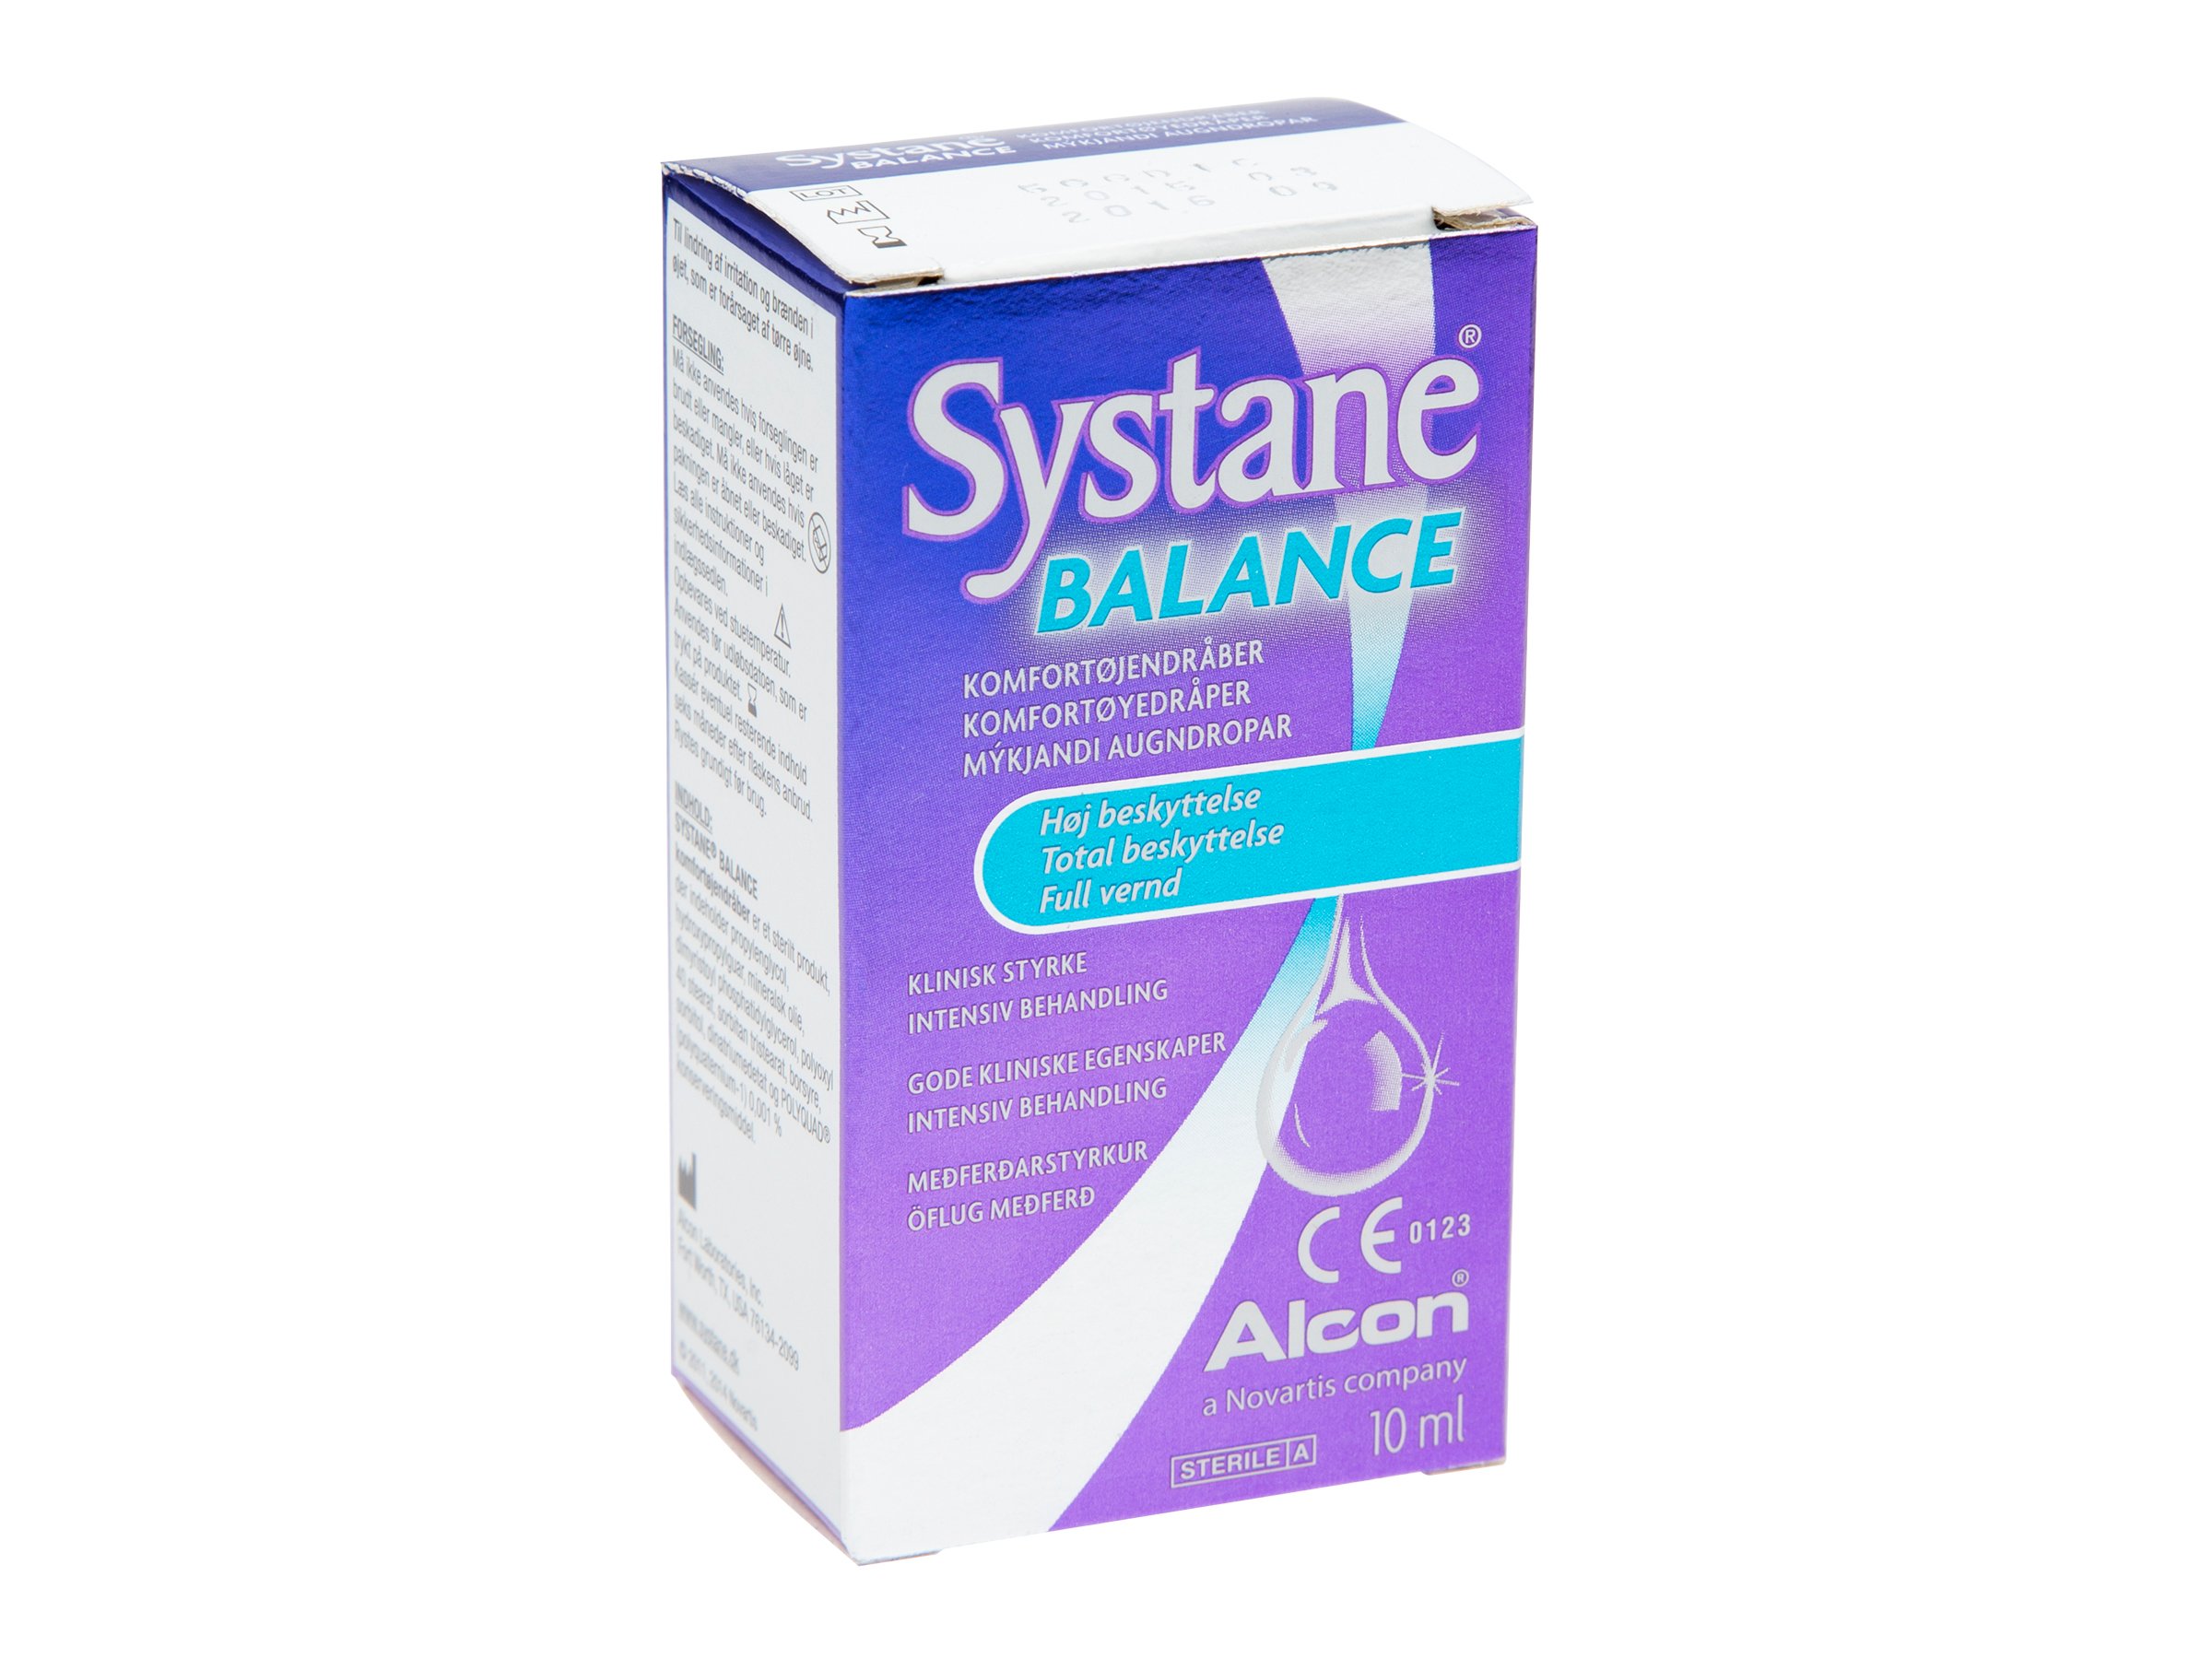 Systane Balance komfortøyedråper, 10 ml